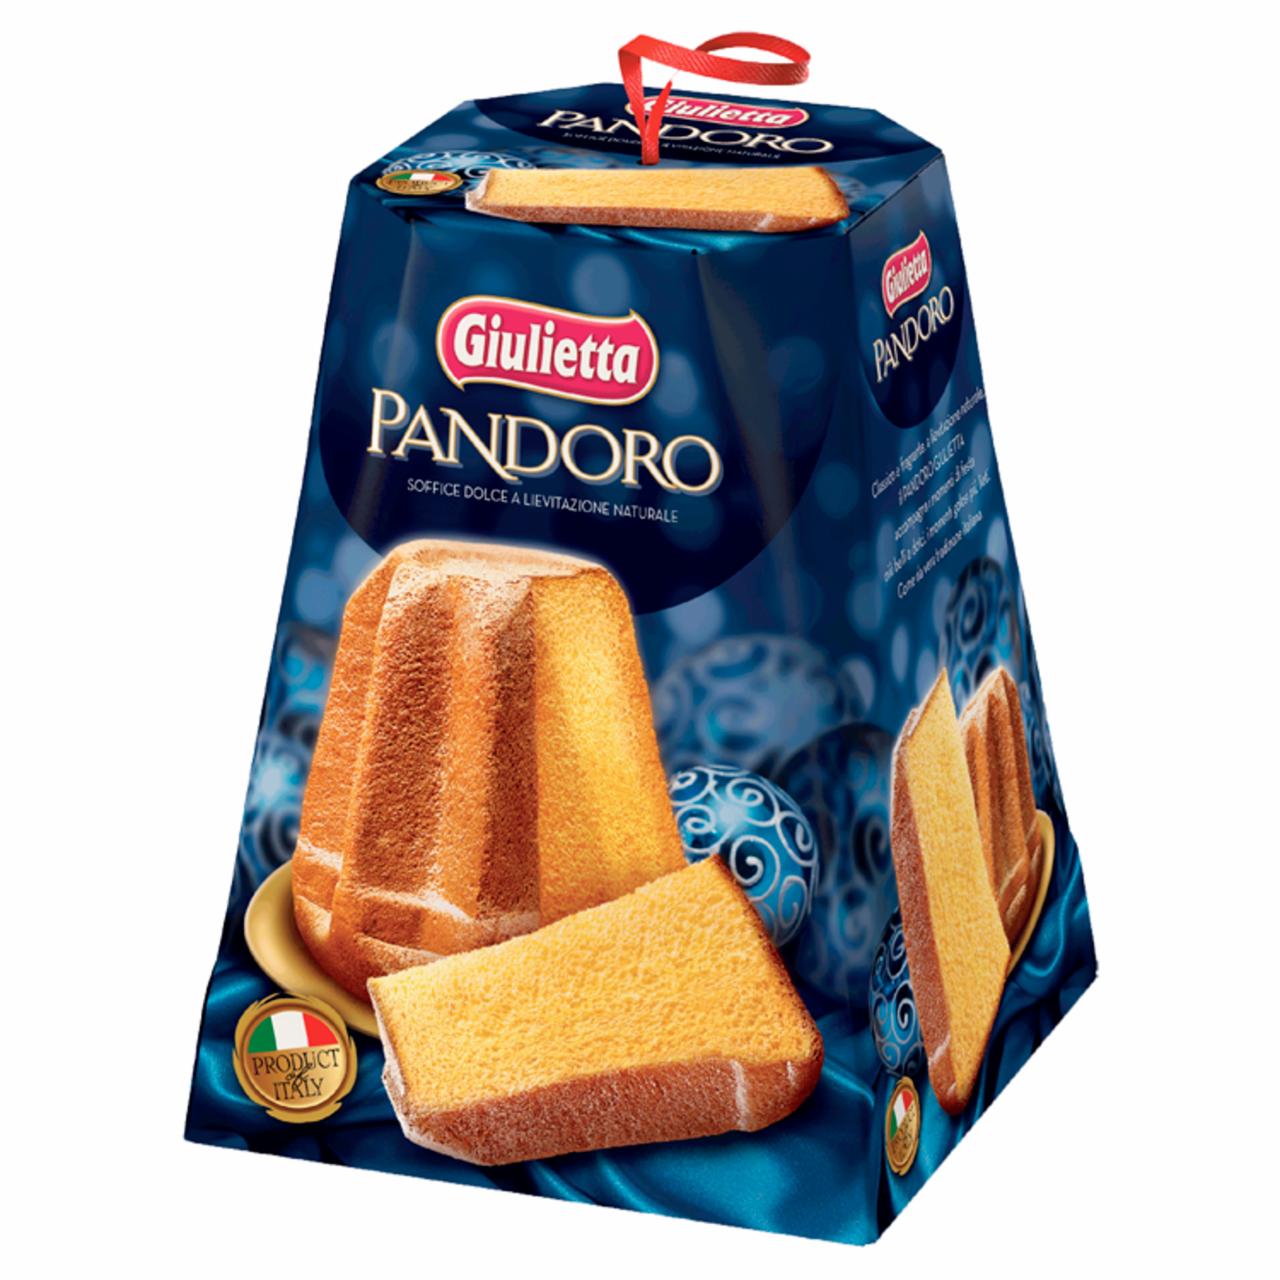 Képek - Giulietta Pandoro sütemény 500 g